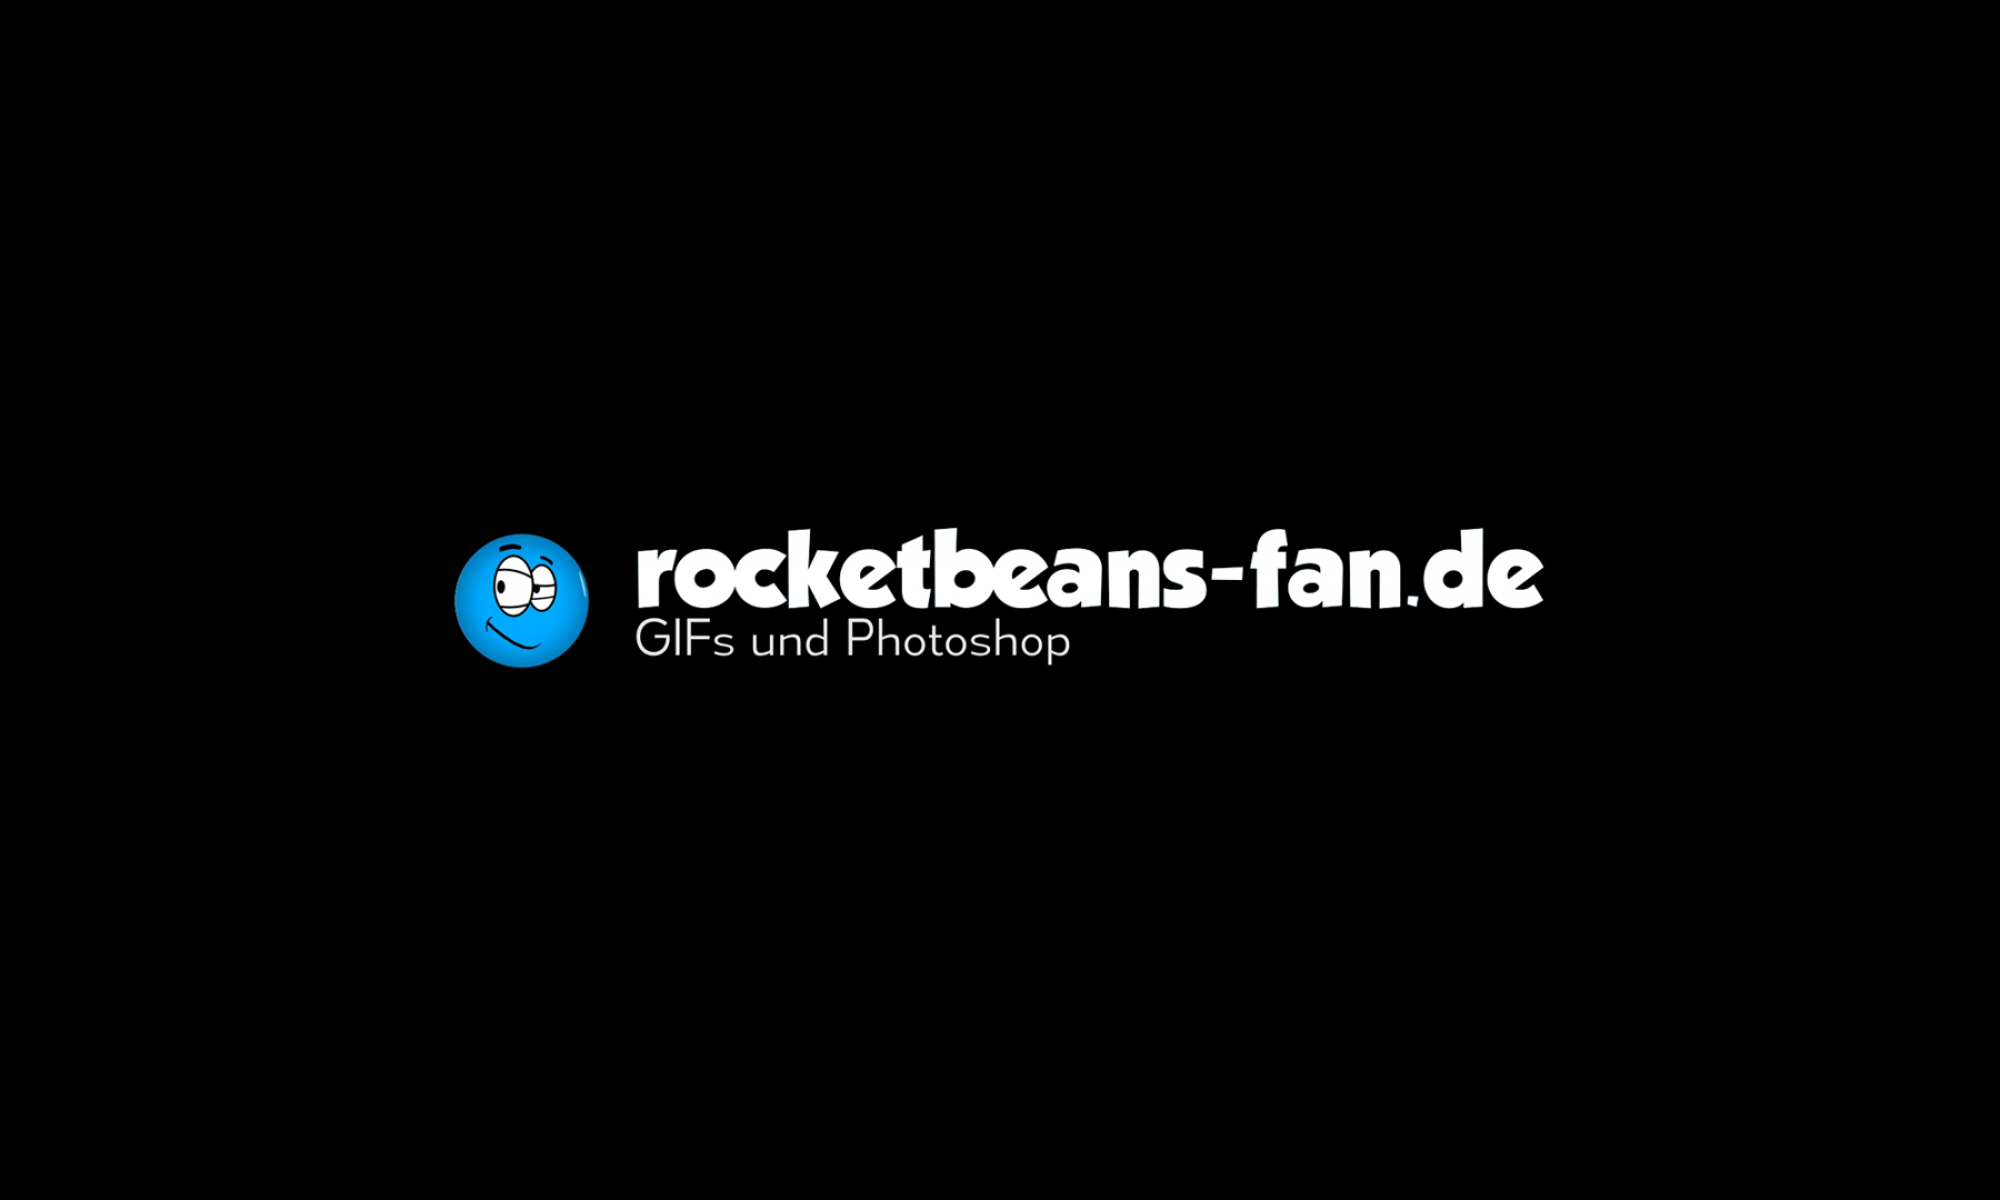 rocketbeans-fan.de